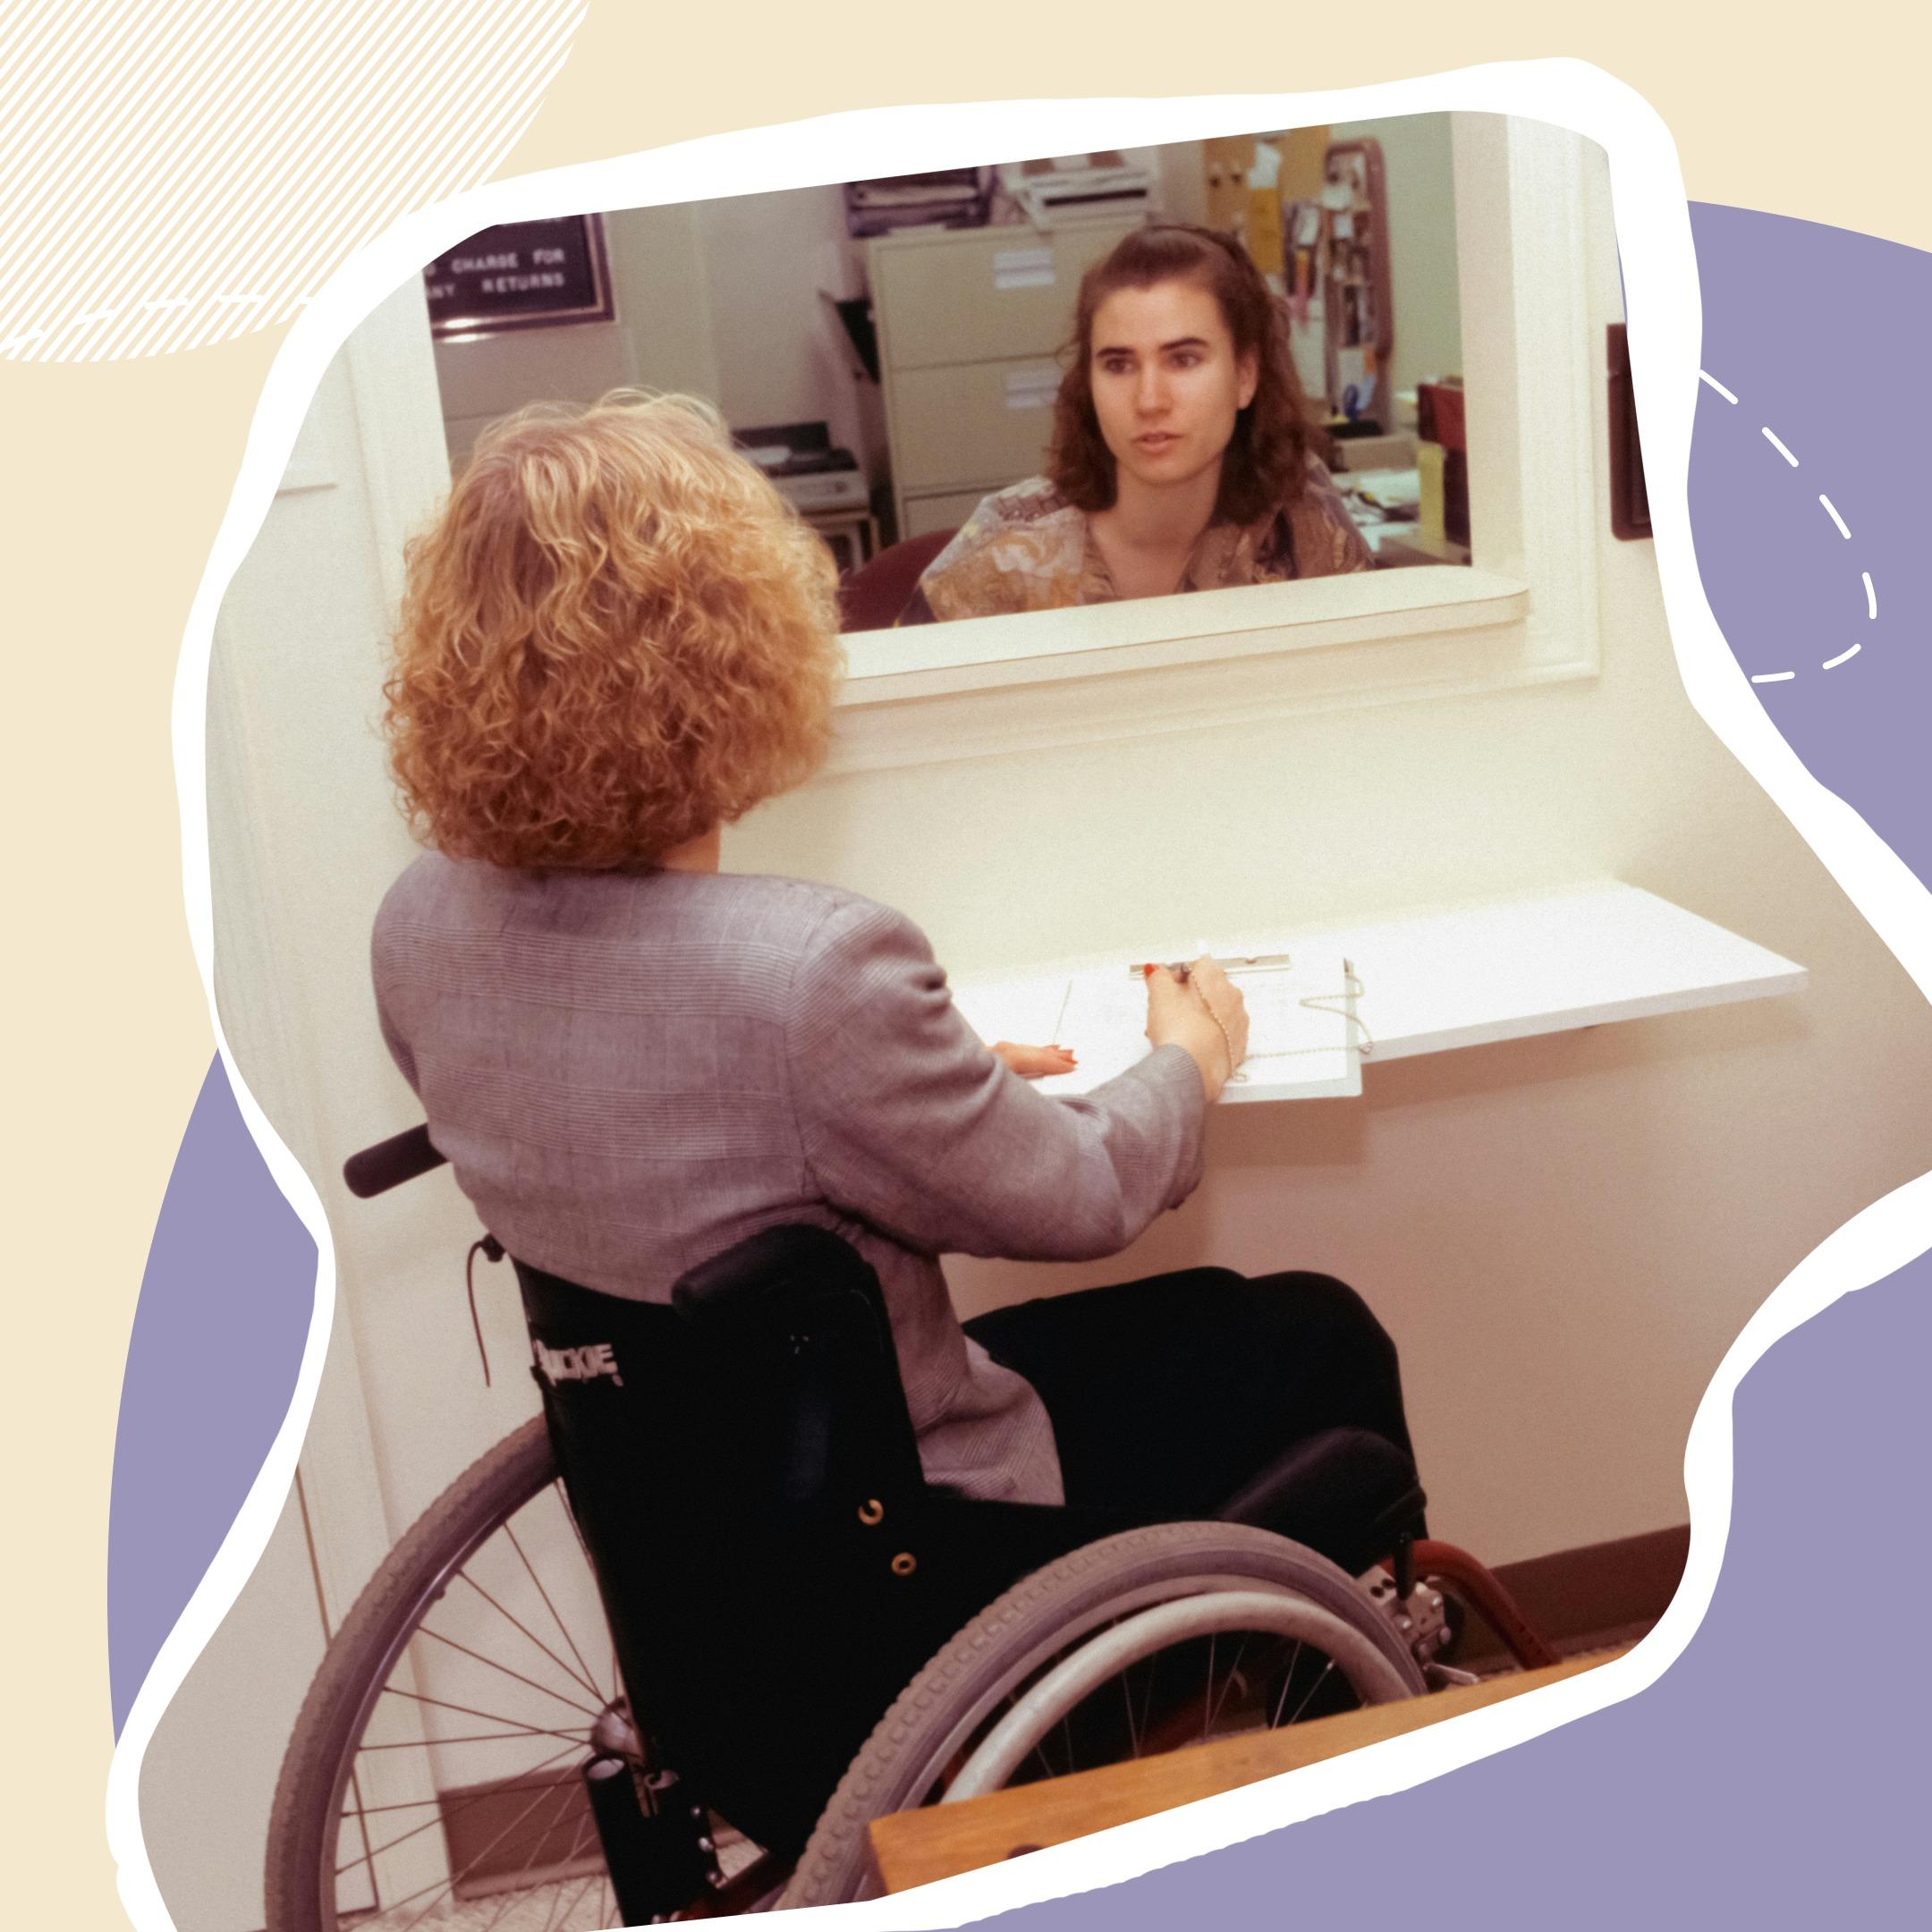 Как устроиться на работу с инвалидностью: разбираемся с юристами за три минуты